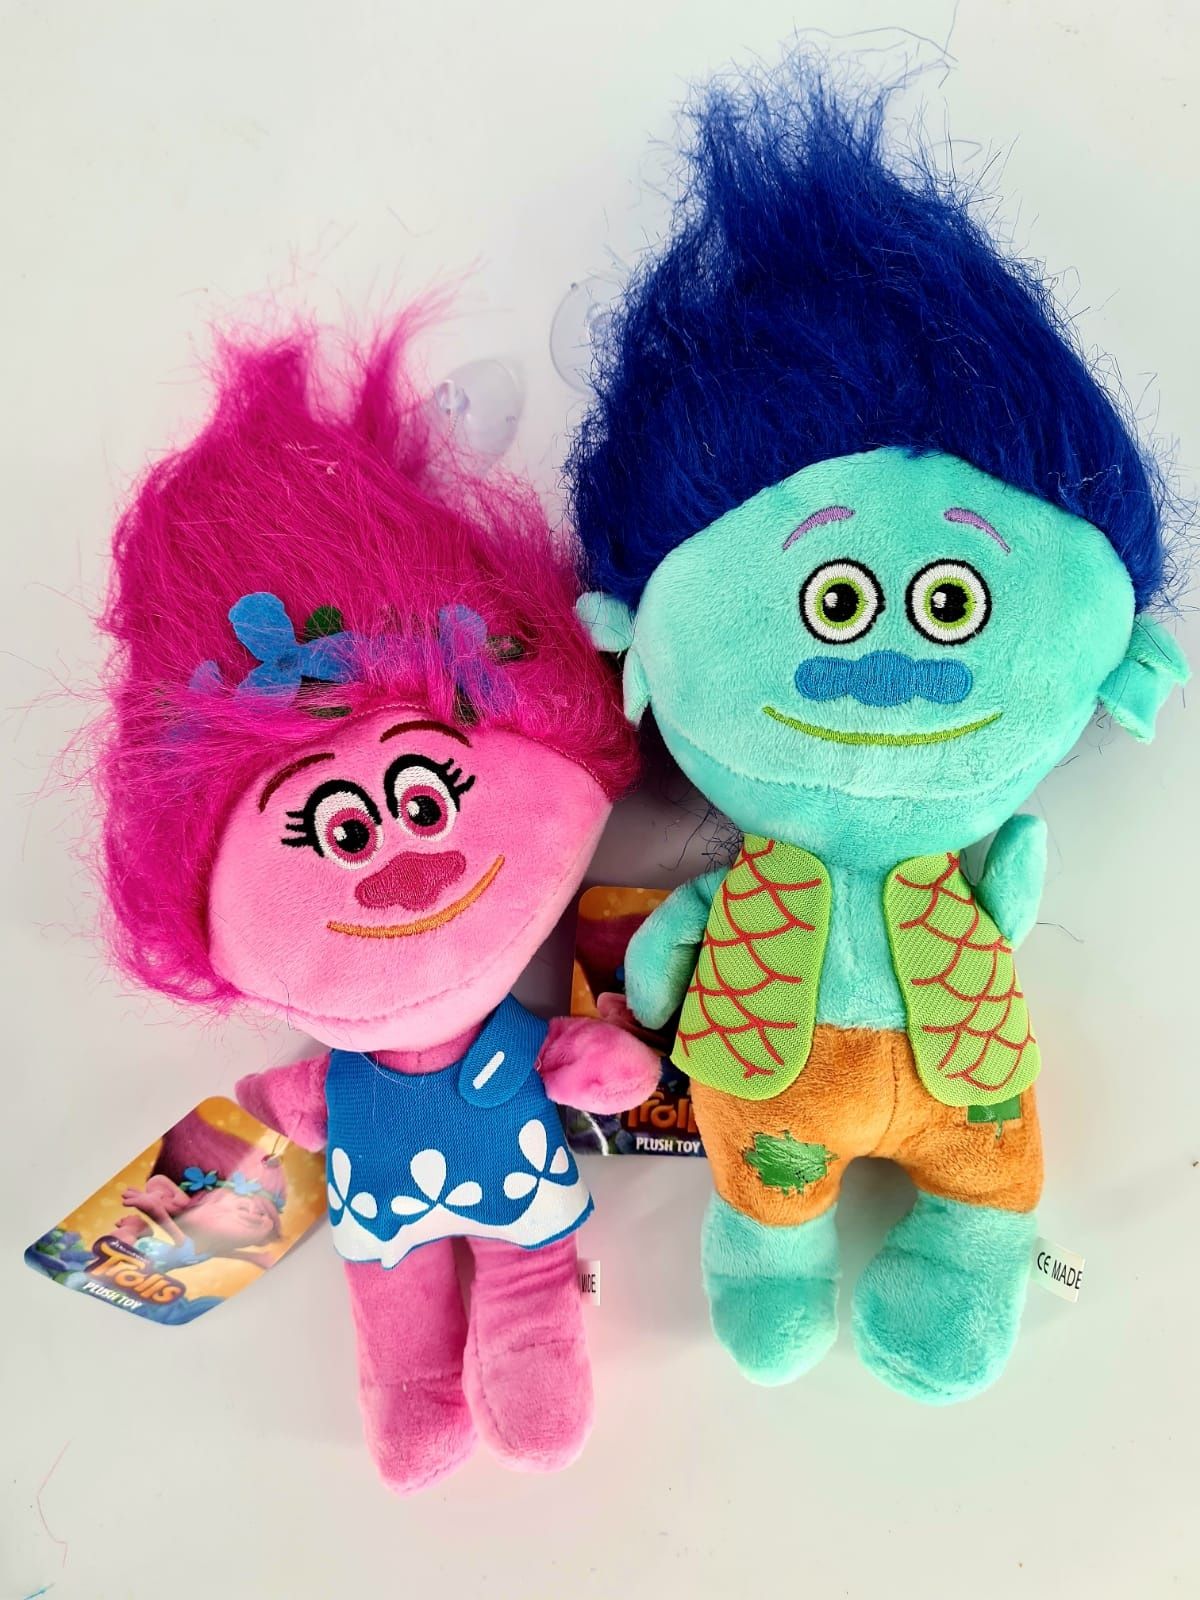 Nowy zestaw dwóch maskotek z bajki Trolle pluszaki - zabawki